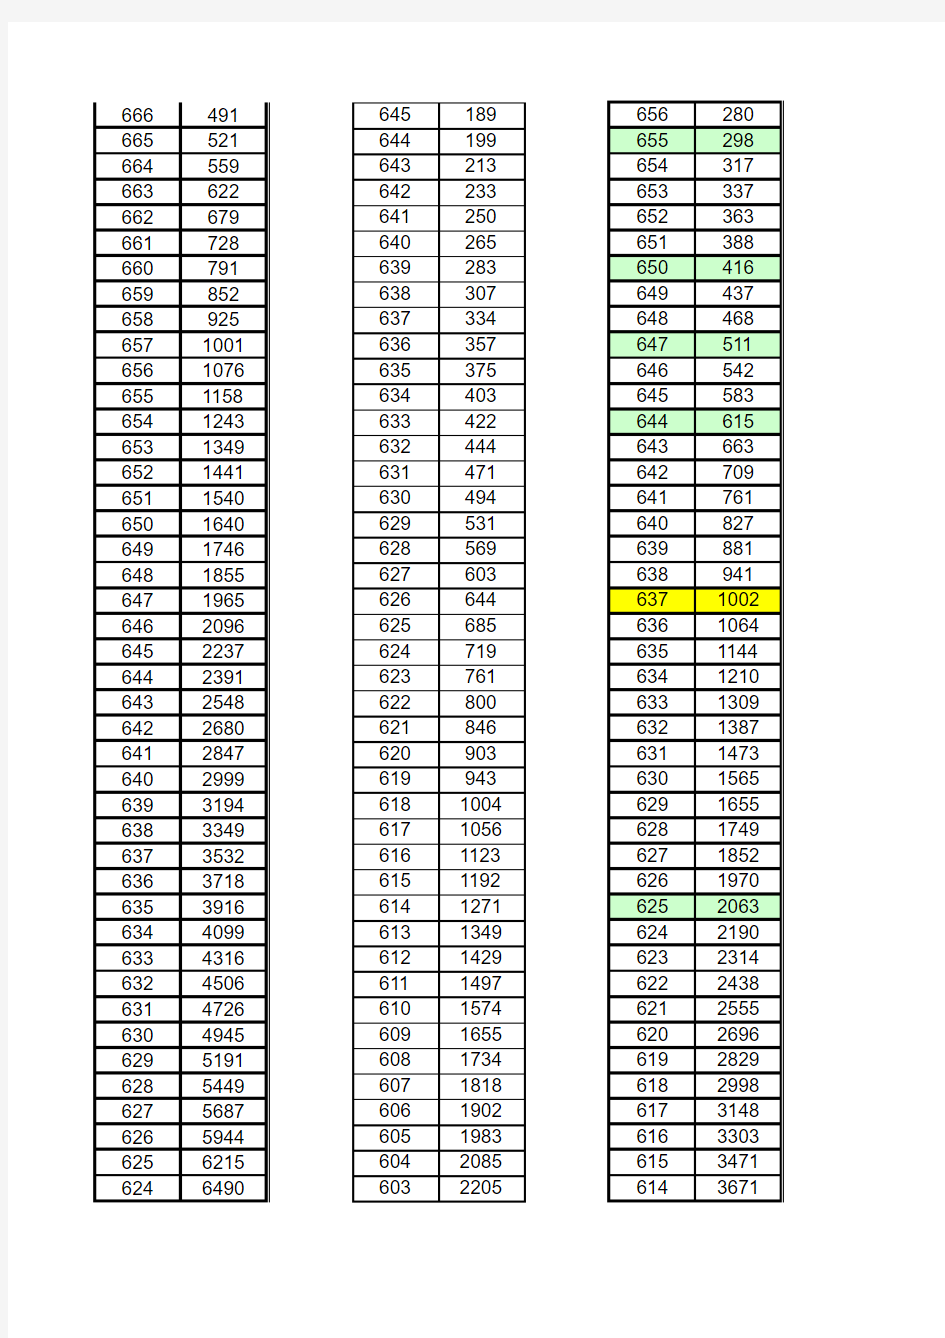 2010-2014年河南省高考一分一段表(理科)